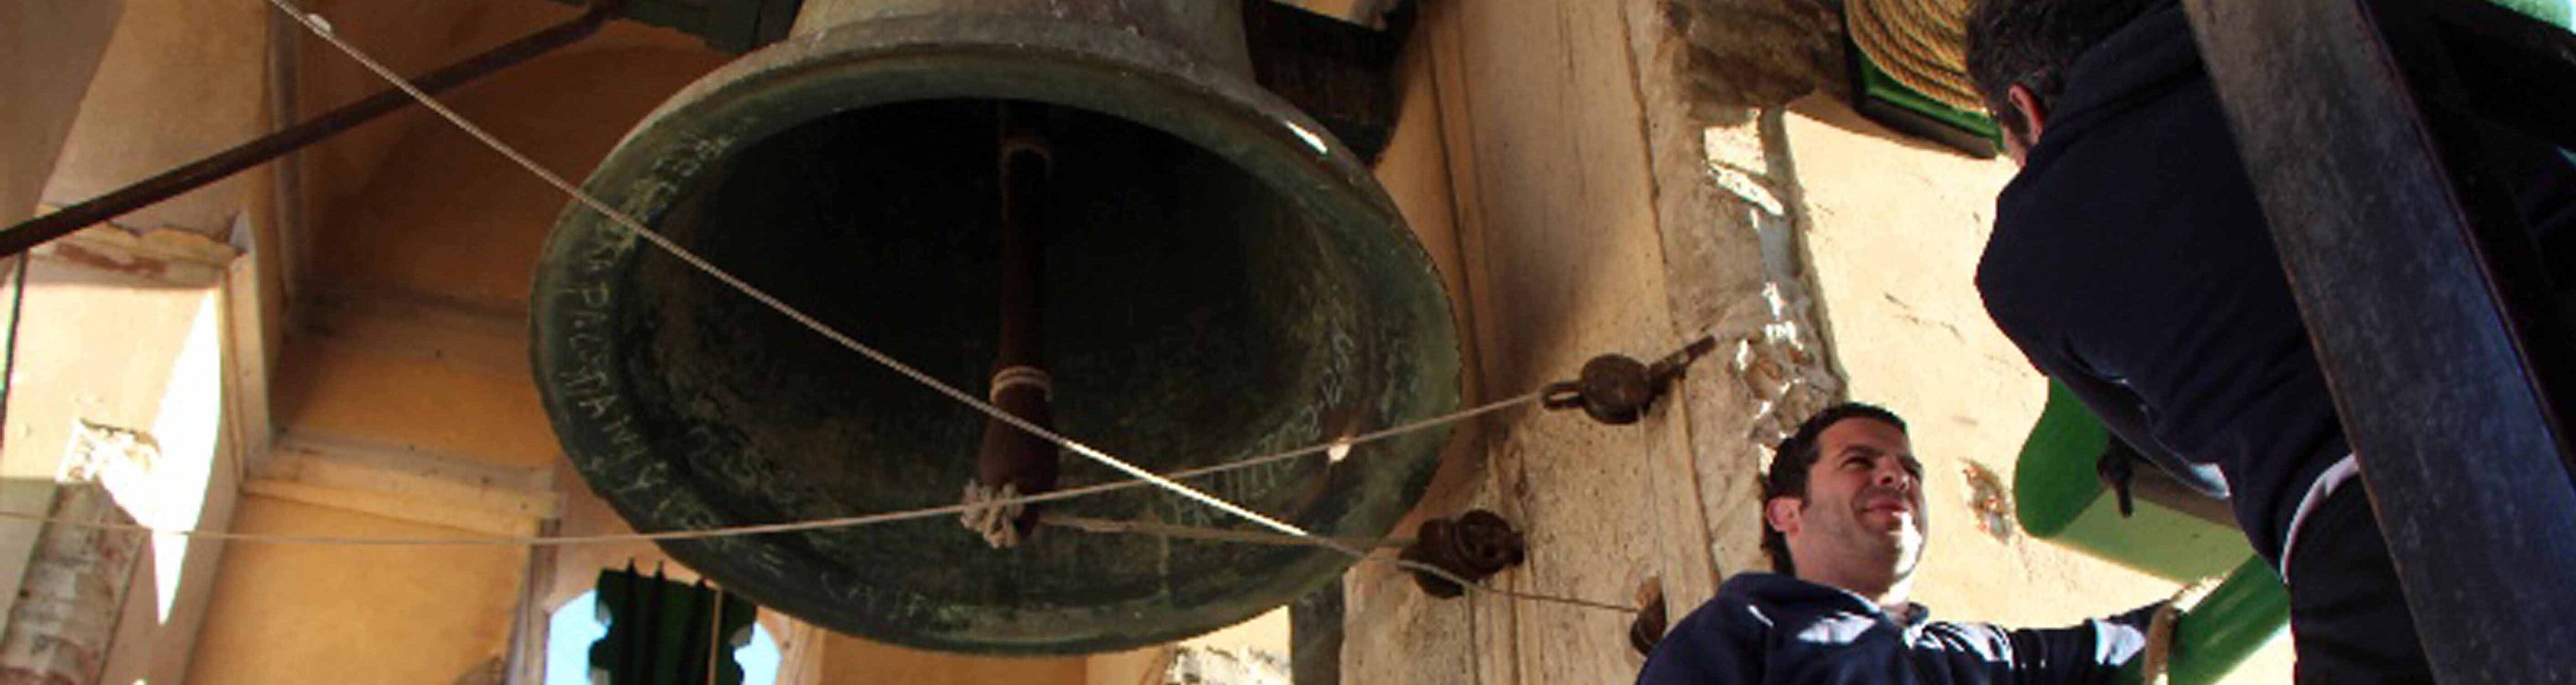 Los campaneros de Utrera mantienen una tradición de más de cinco siglos